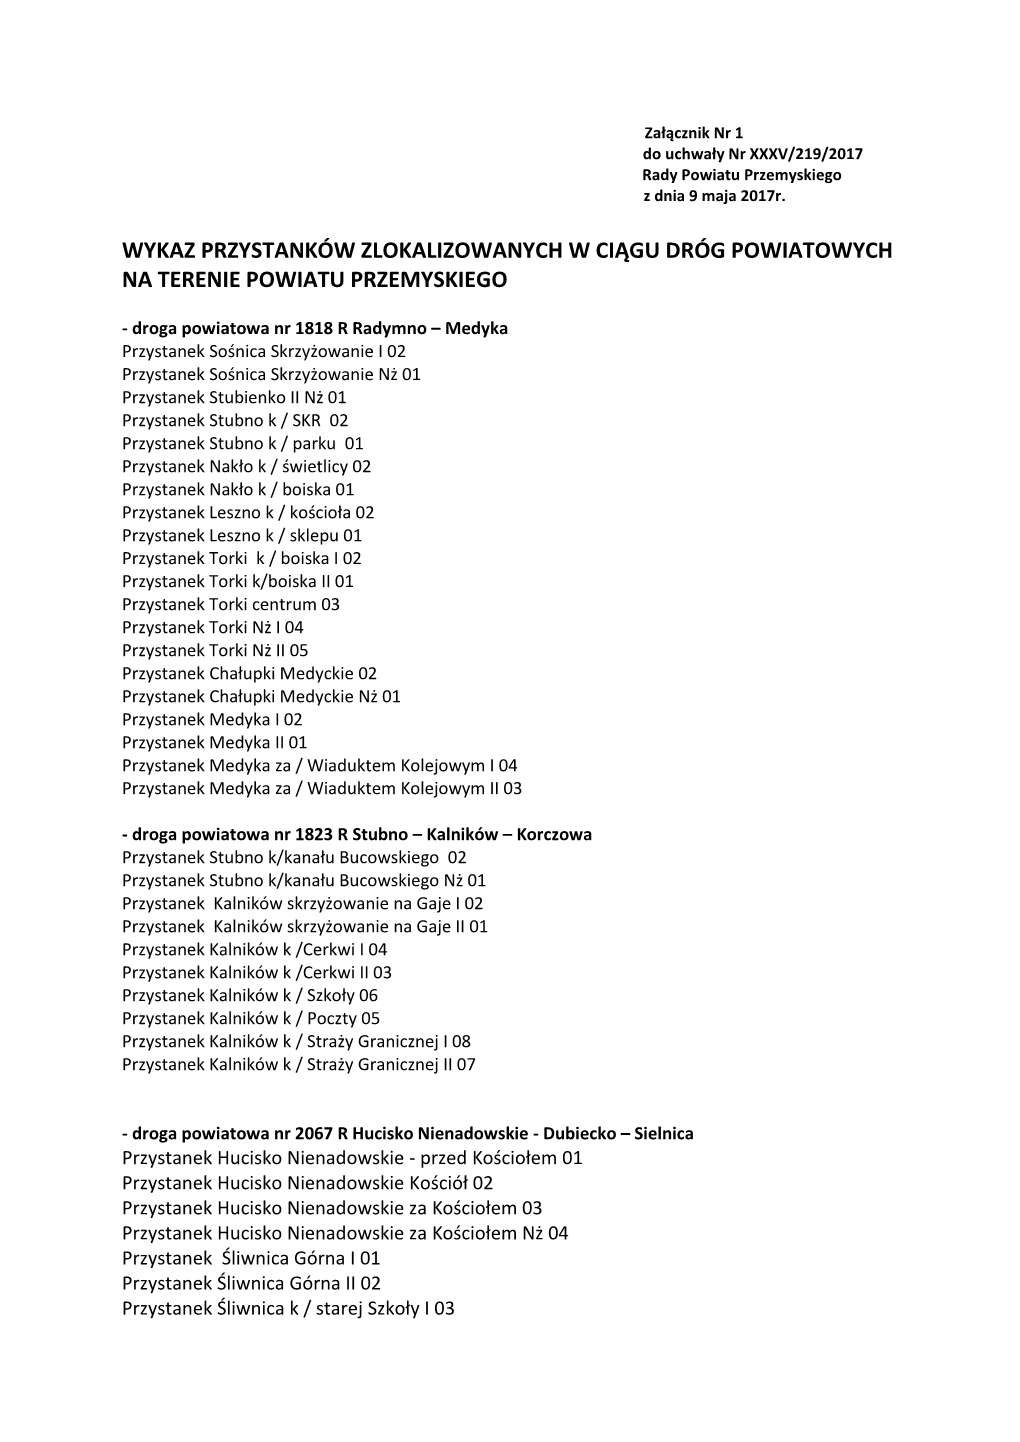 Wykaz Przystanków Zlokalizowanych W Ciągu Dróg Powiatowych Na Terenie Powiatu Przemyskiego